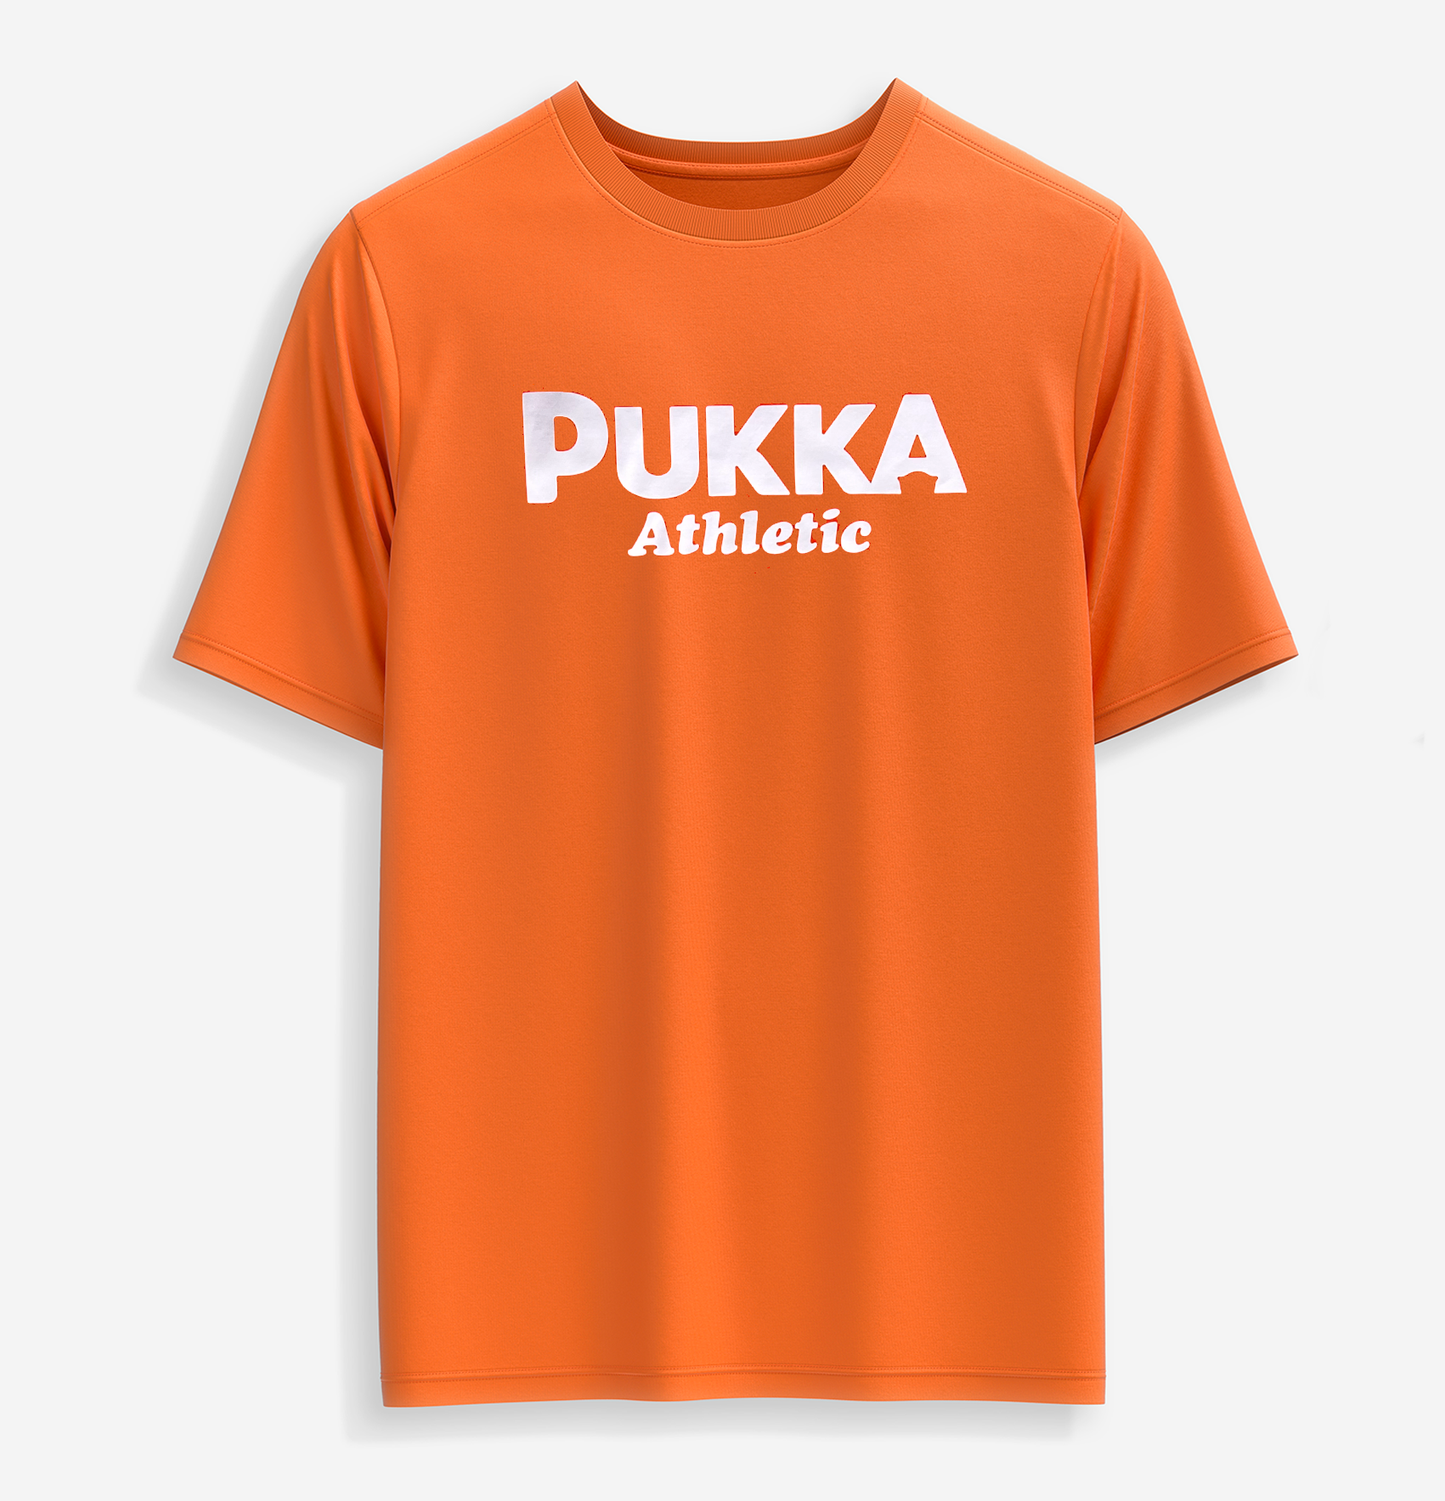 Pukka Athletic Tee - Orange